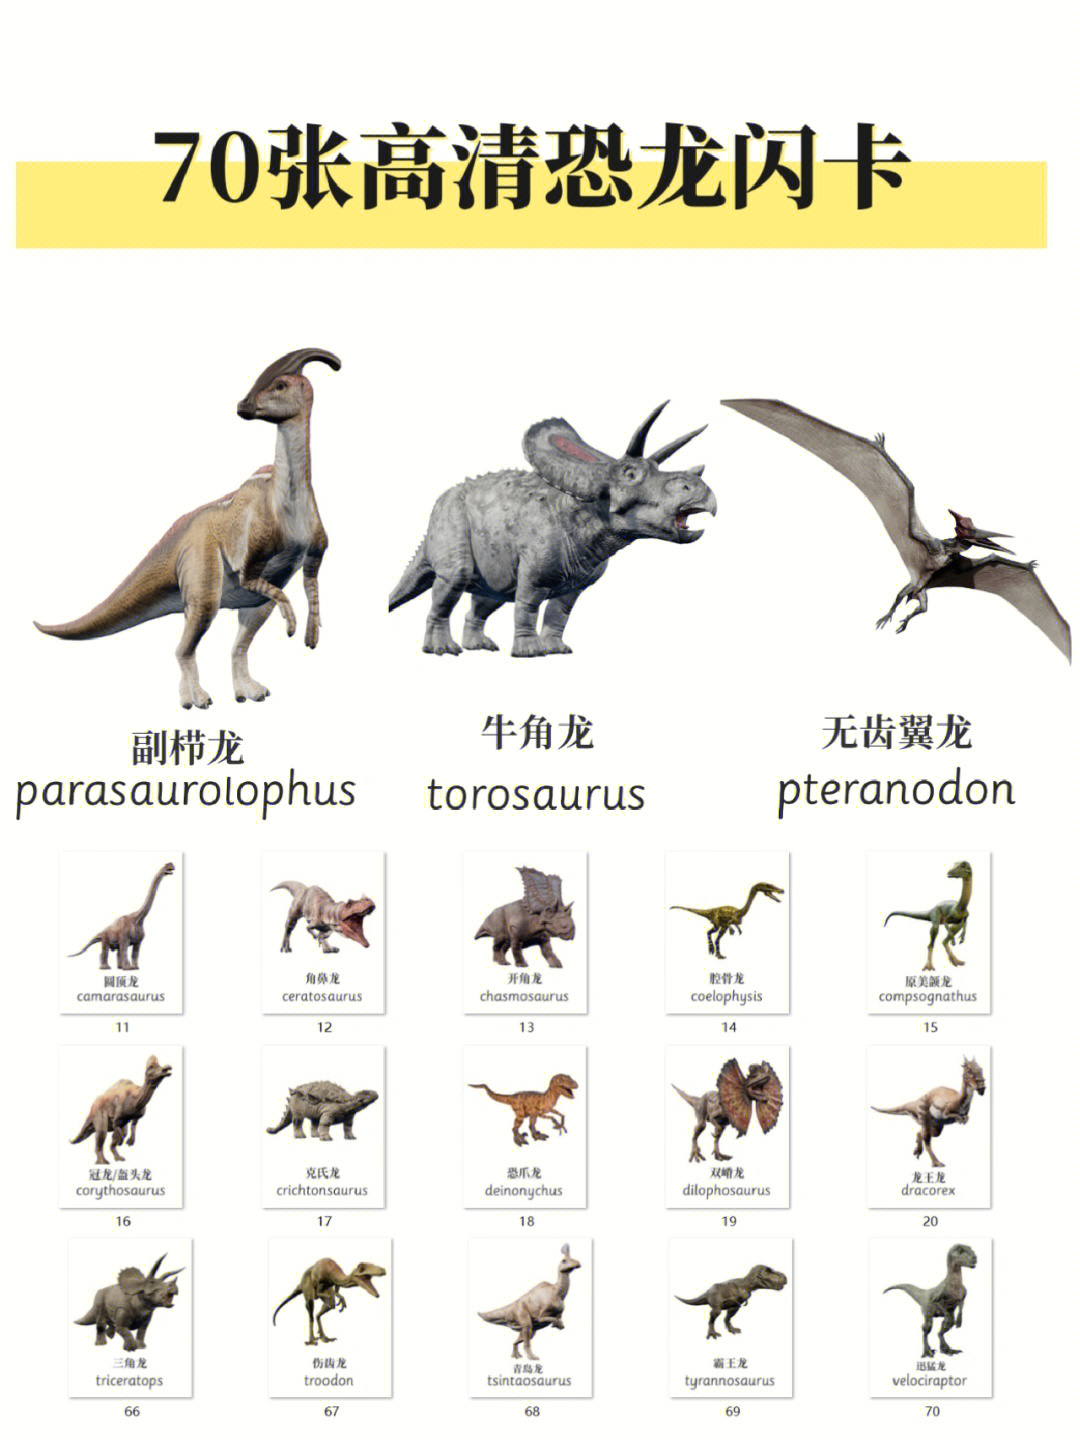 食肉恐龙 排名图片